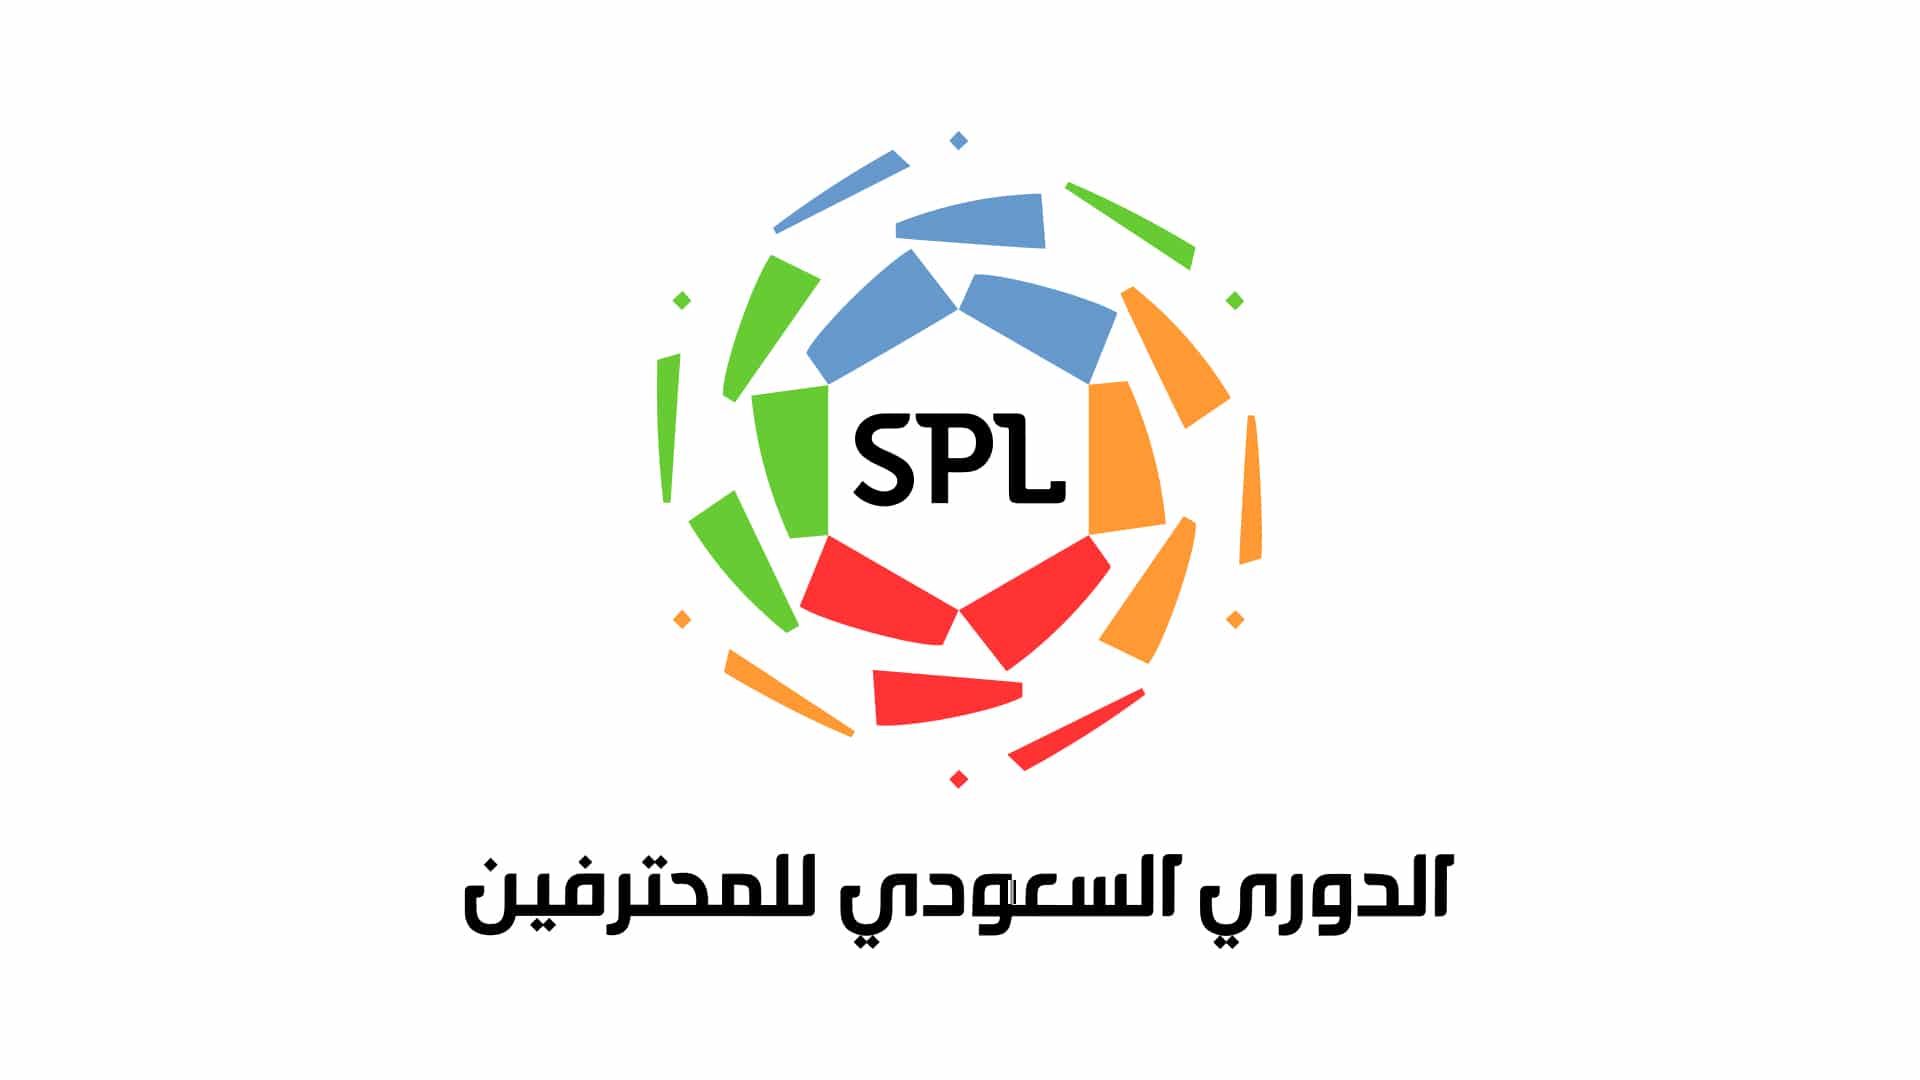 مطلوب أخصائي علاقات حكومية وإدارة مرافق في رابطة الدوري السعودي للمحترفين – الرياض